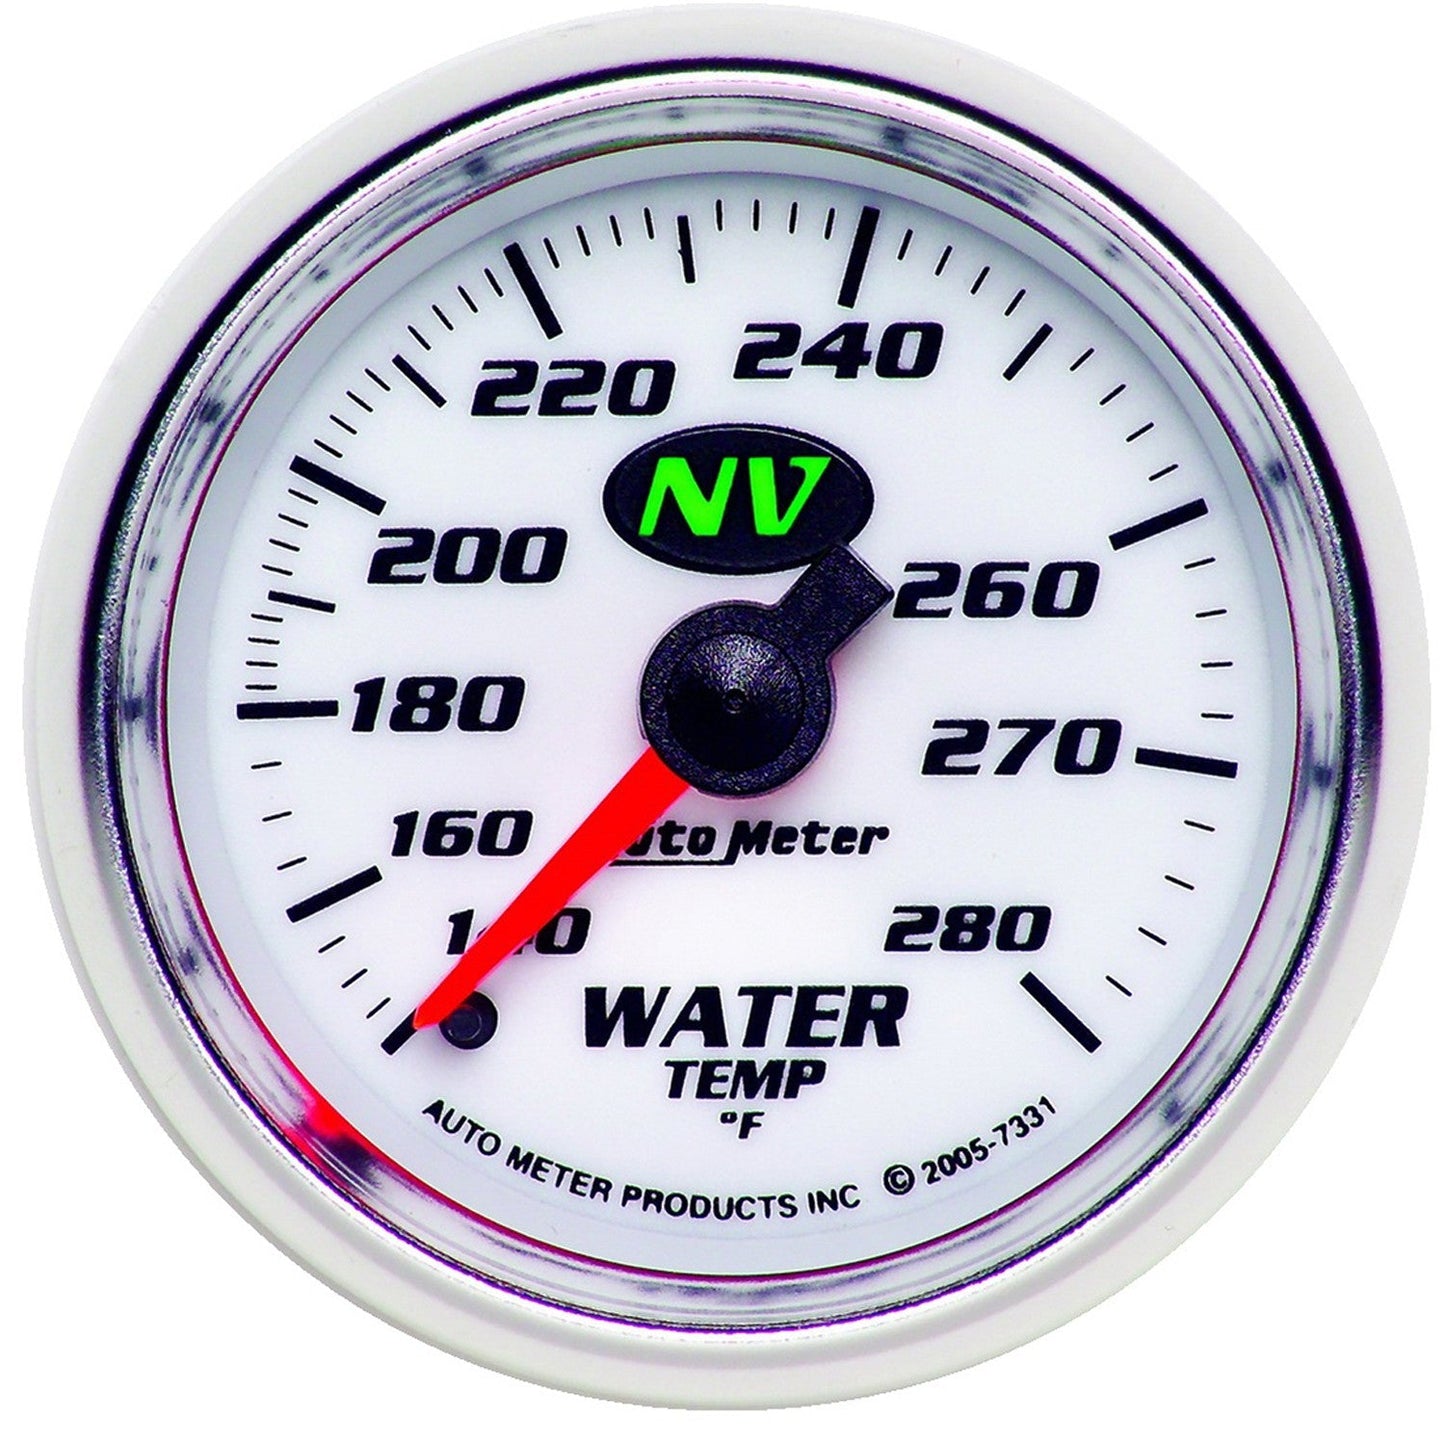 AutoMeter - 2-1/16" TEMPERATURA DEL AGUA, 140-280 °F, 6 PIES, MECÁNICO, NV (7331)